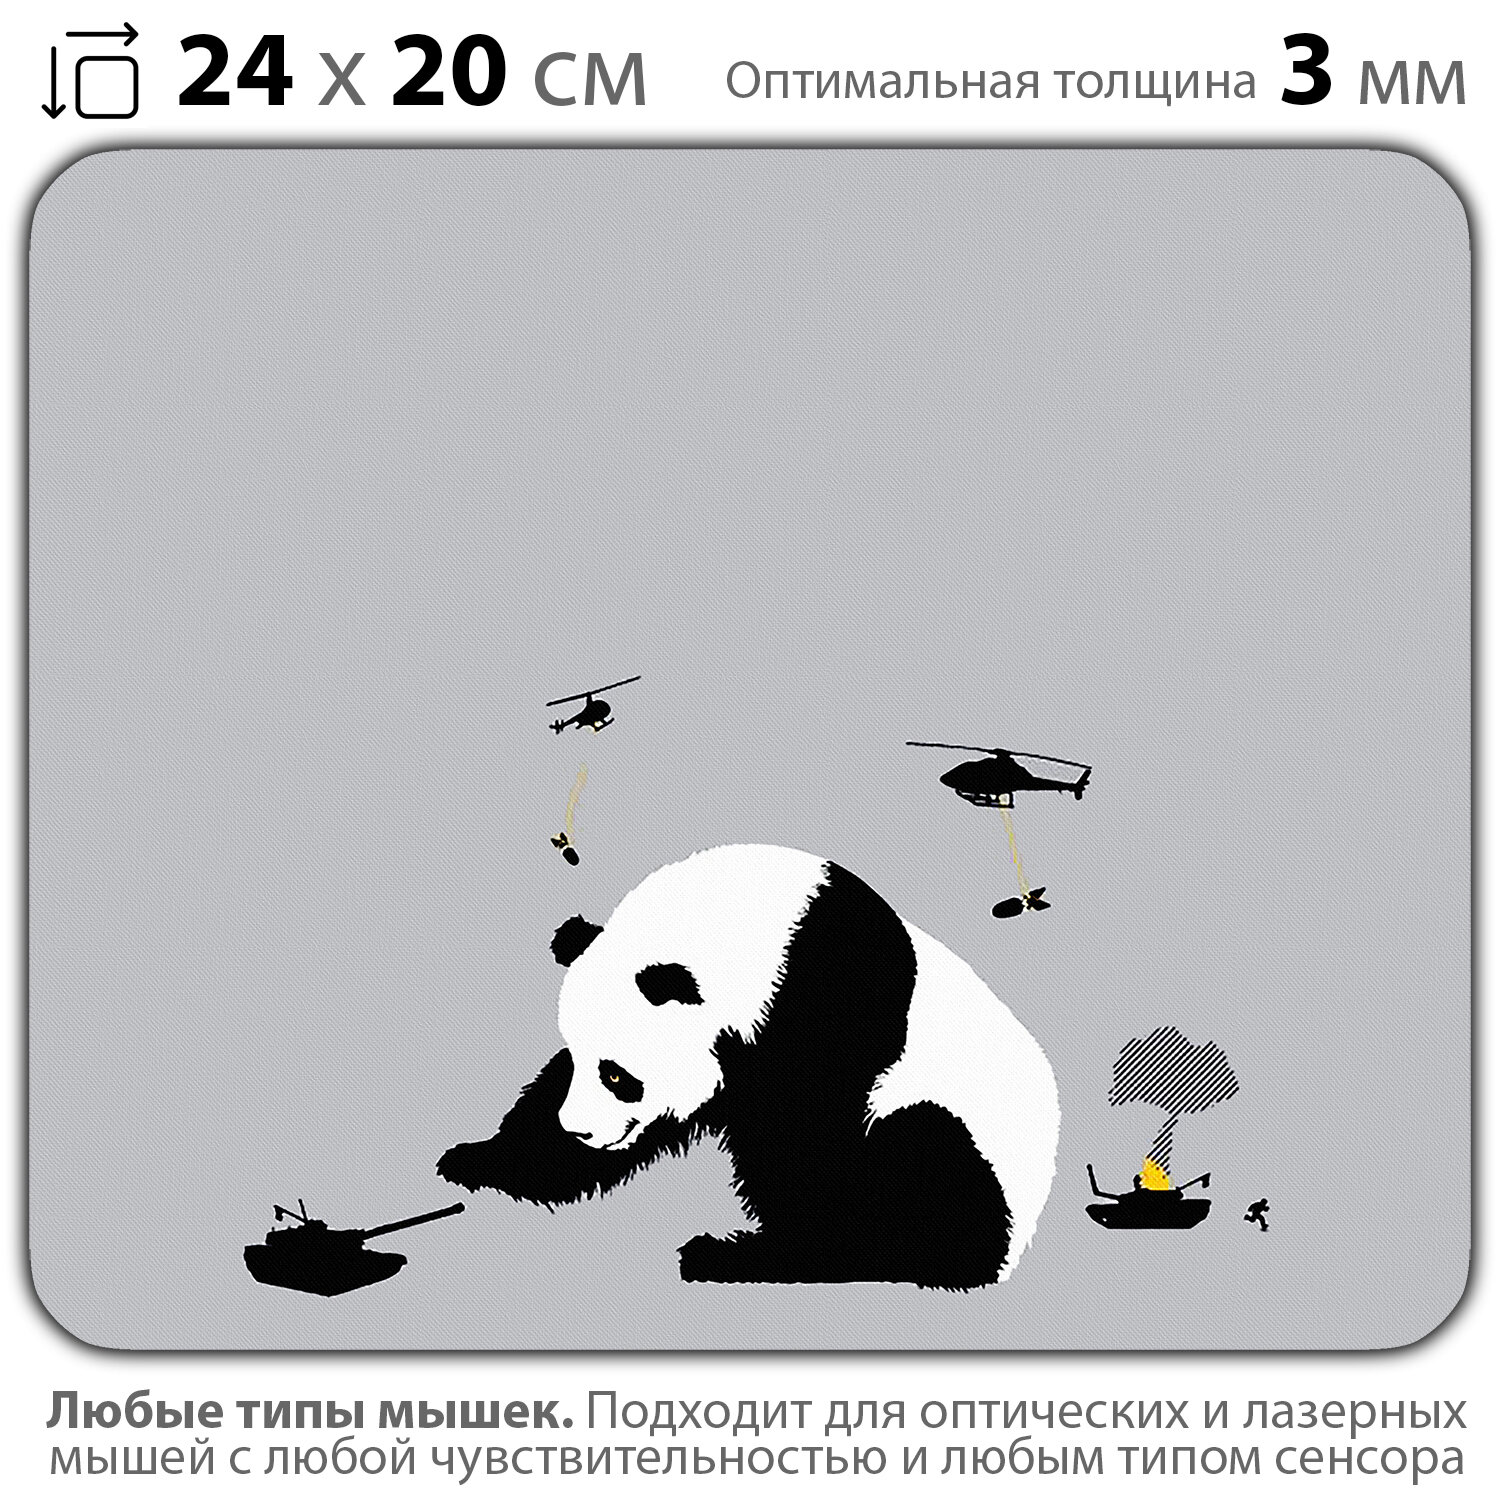 Коврик для мыши "Игривая панда" (24 x 20 см x 3 мм)